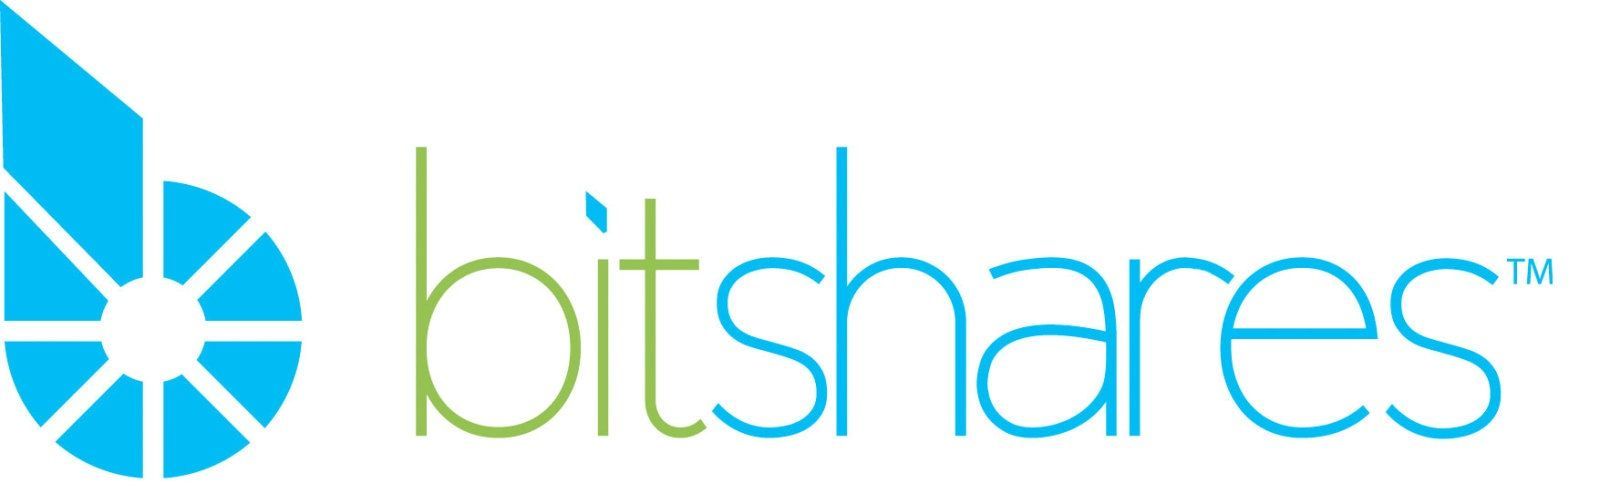 更新BitShares 节点版本至2.0.180328